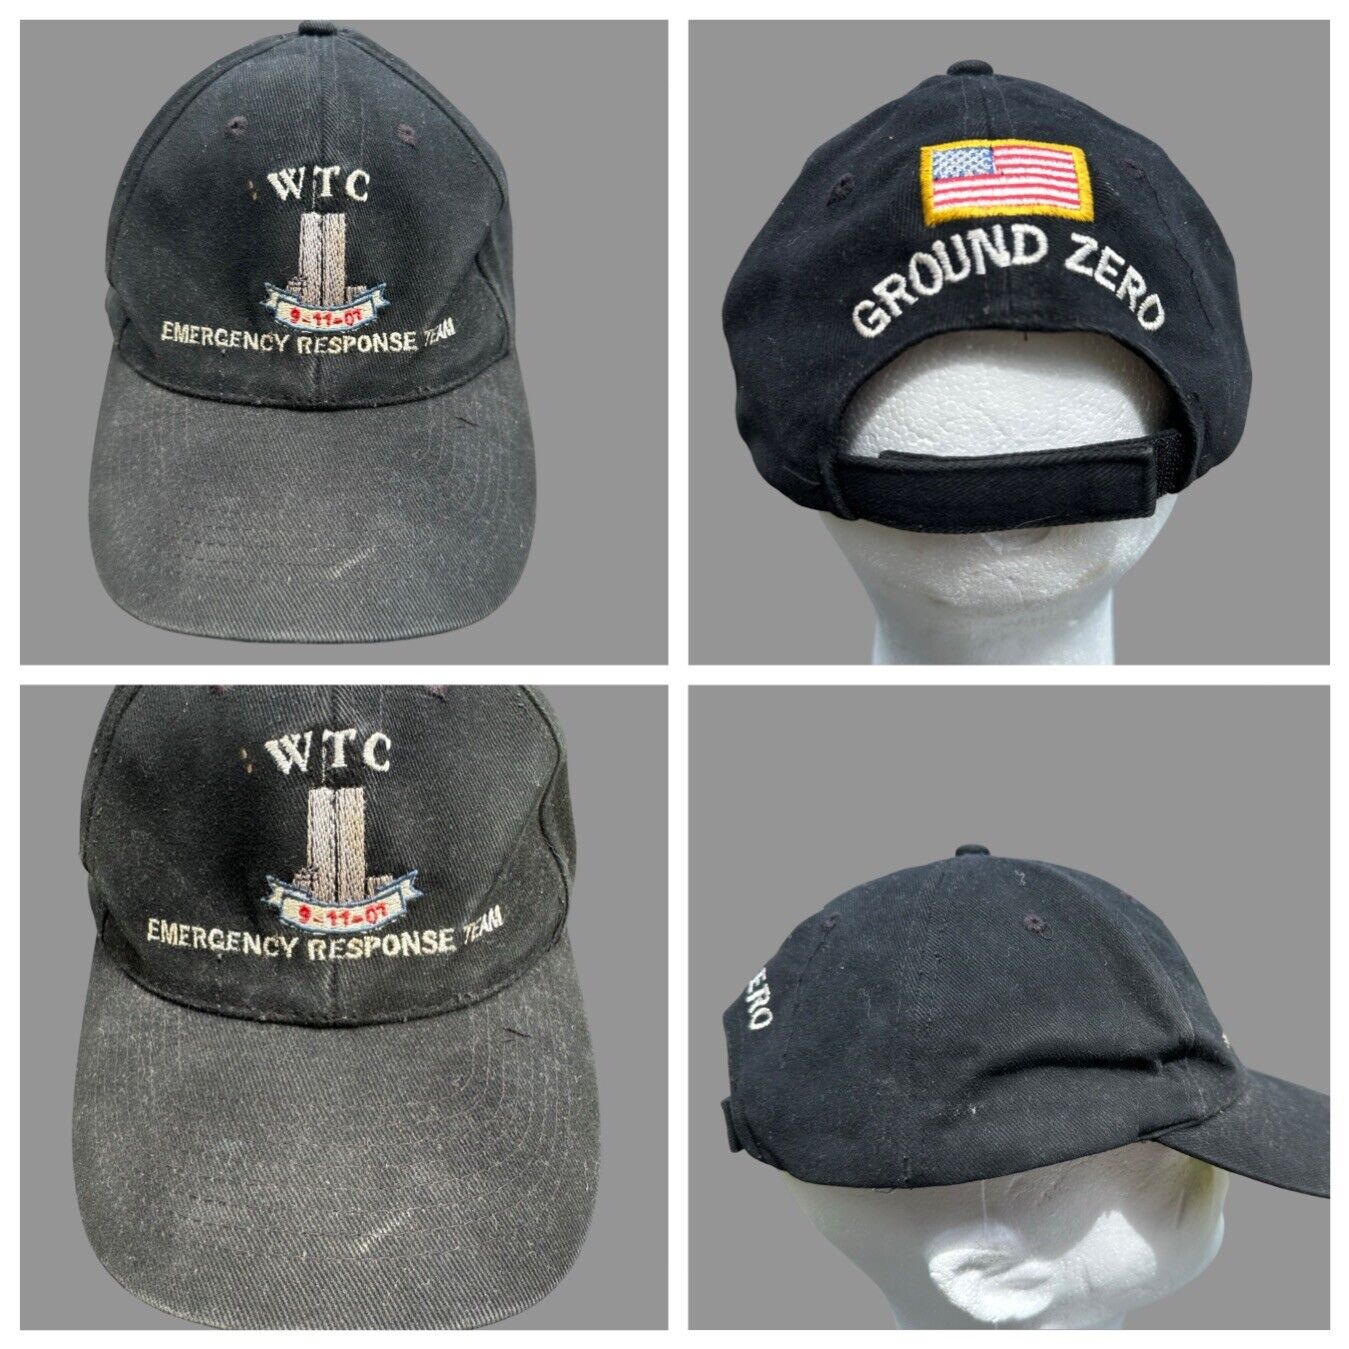 WTC World Trade Center Emergency Response Team Hat 9-11-01 Ground Zero Hat